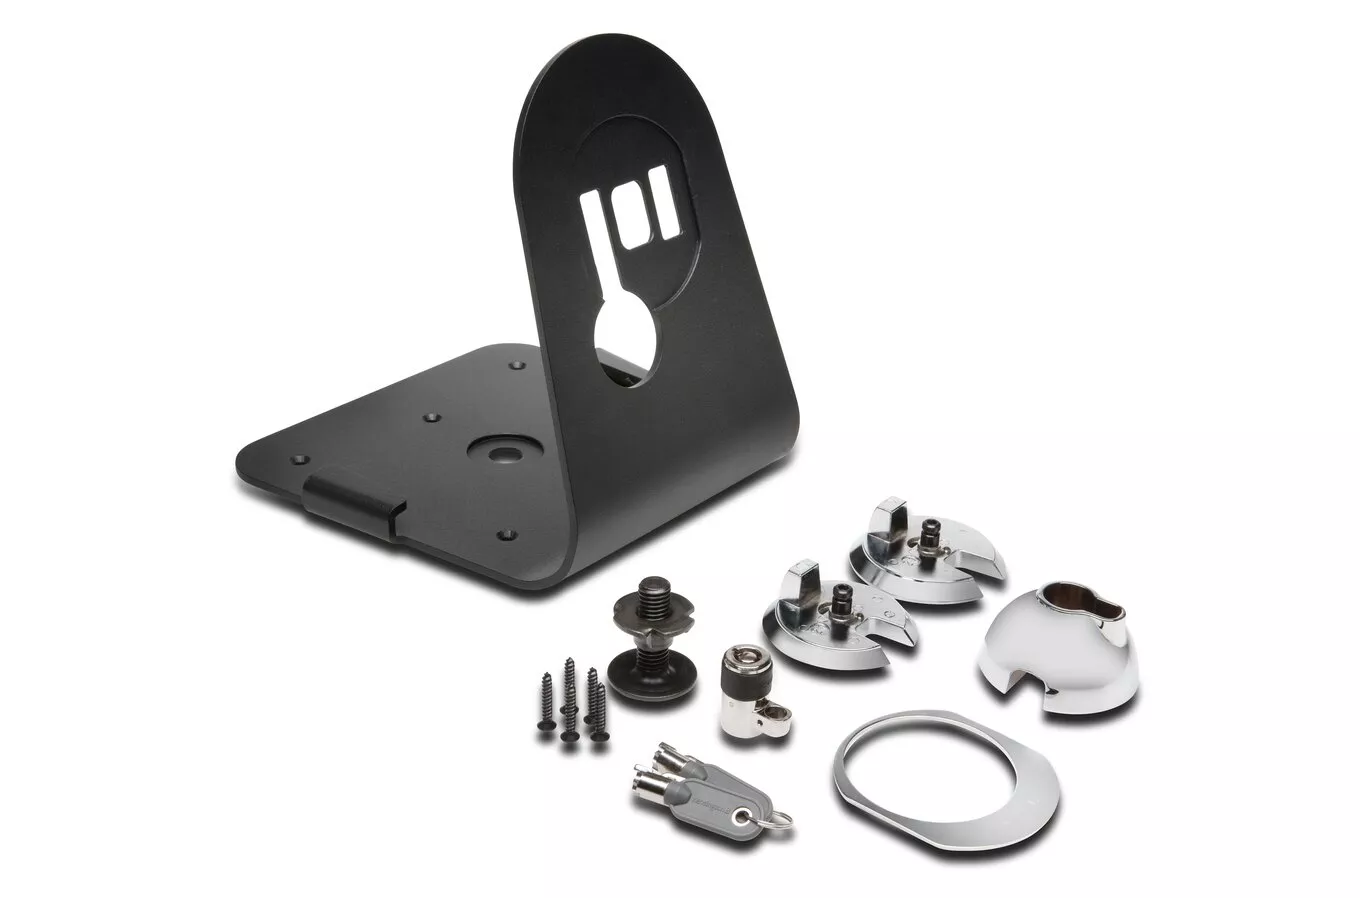 Achat Kensington SafeDome™ Mounted Lock Stand for iMac® et autres produits de la marque Kensington